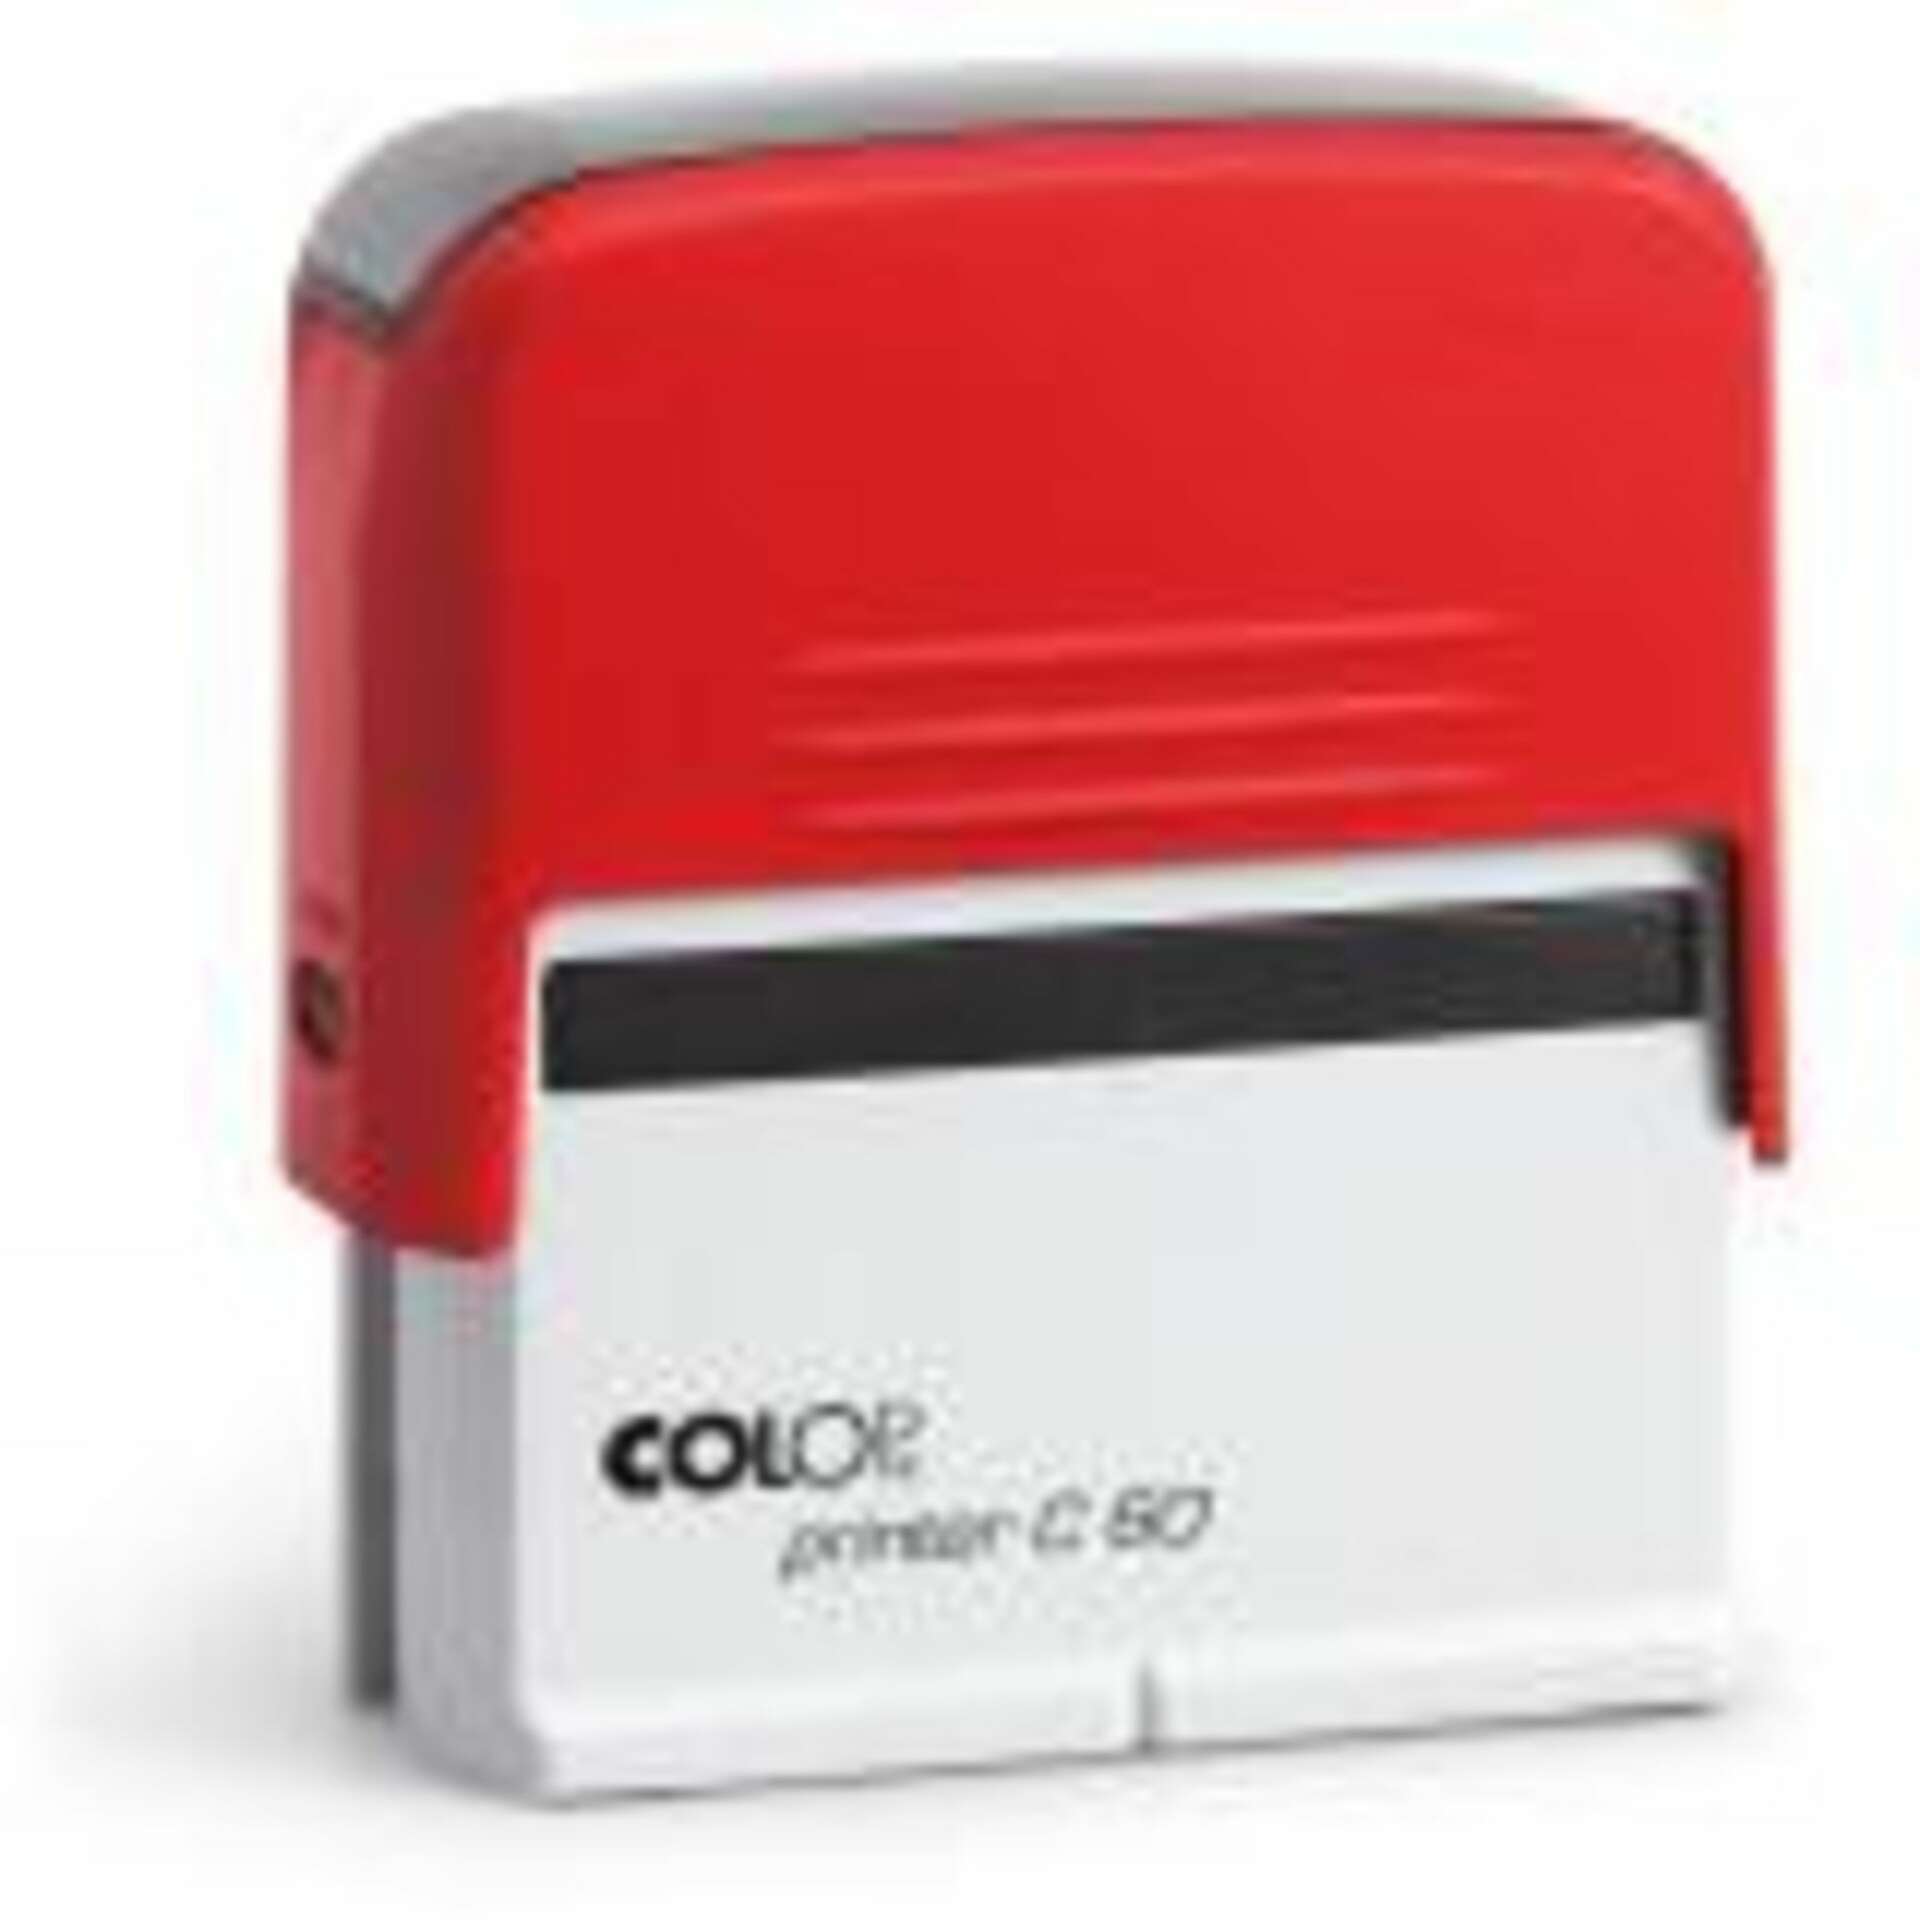 Colop Printer C 60 szövegbélyegző önfestékező piros ház fekete pá...